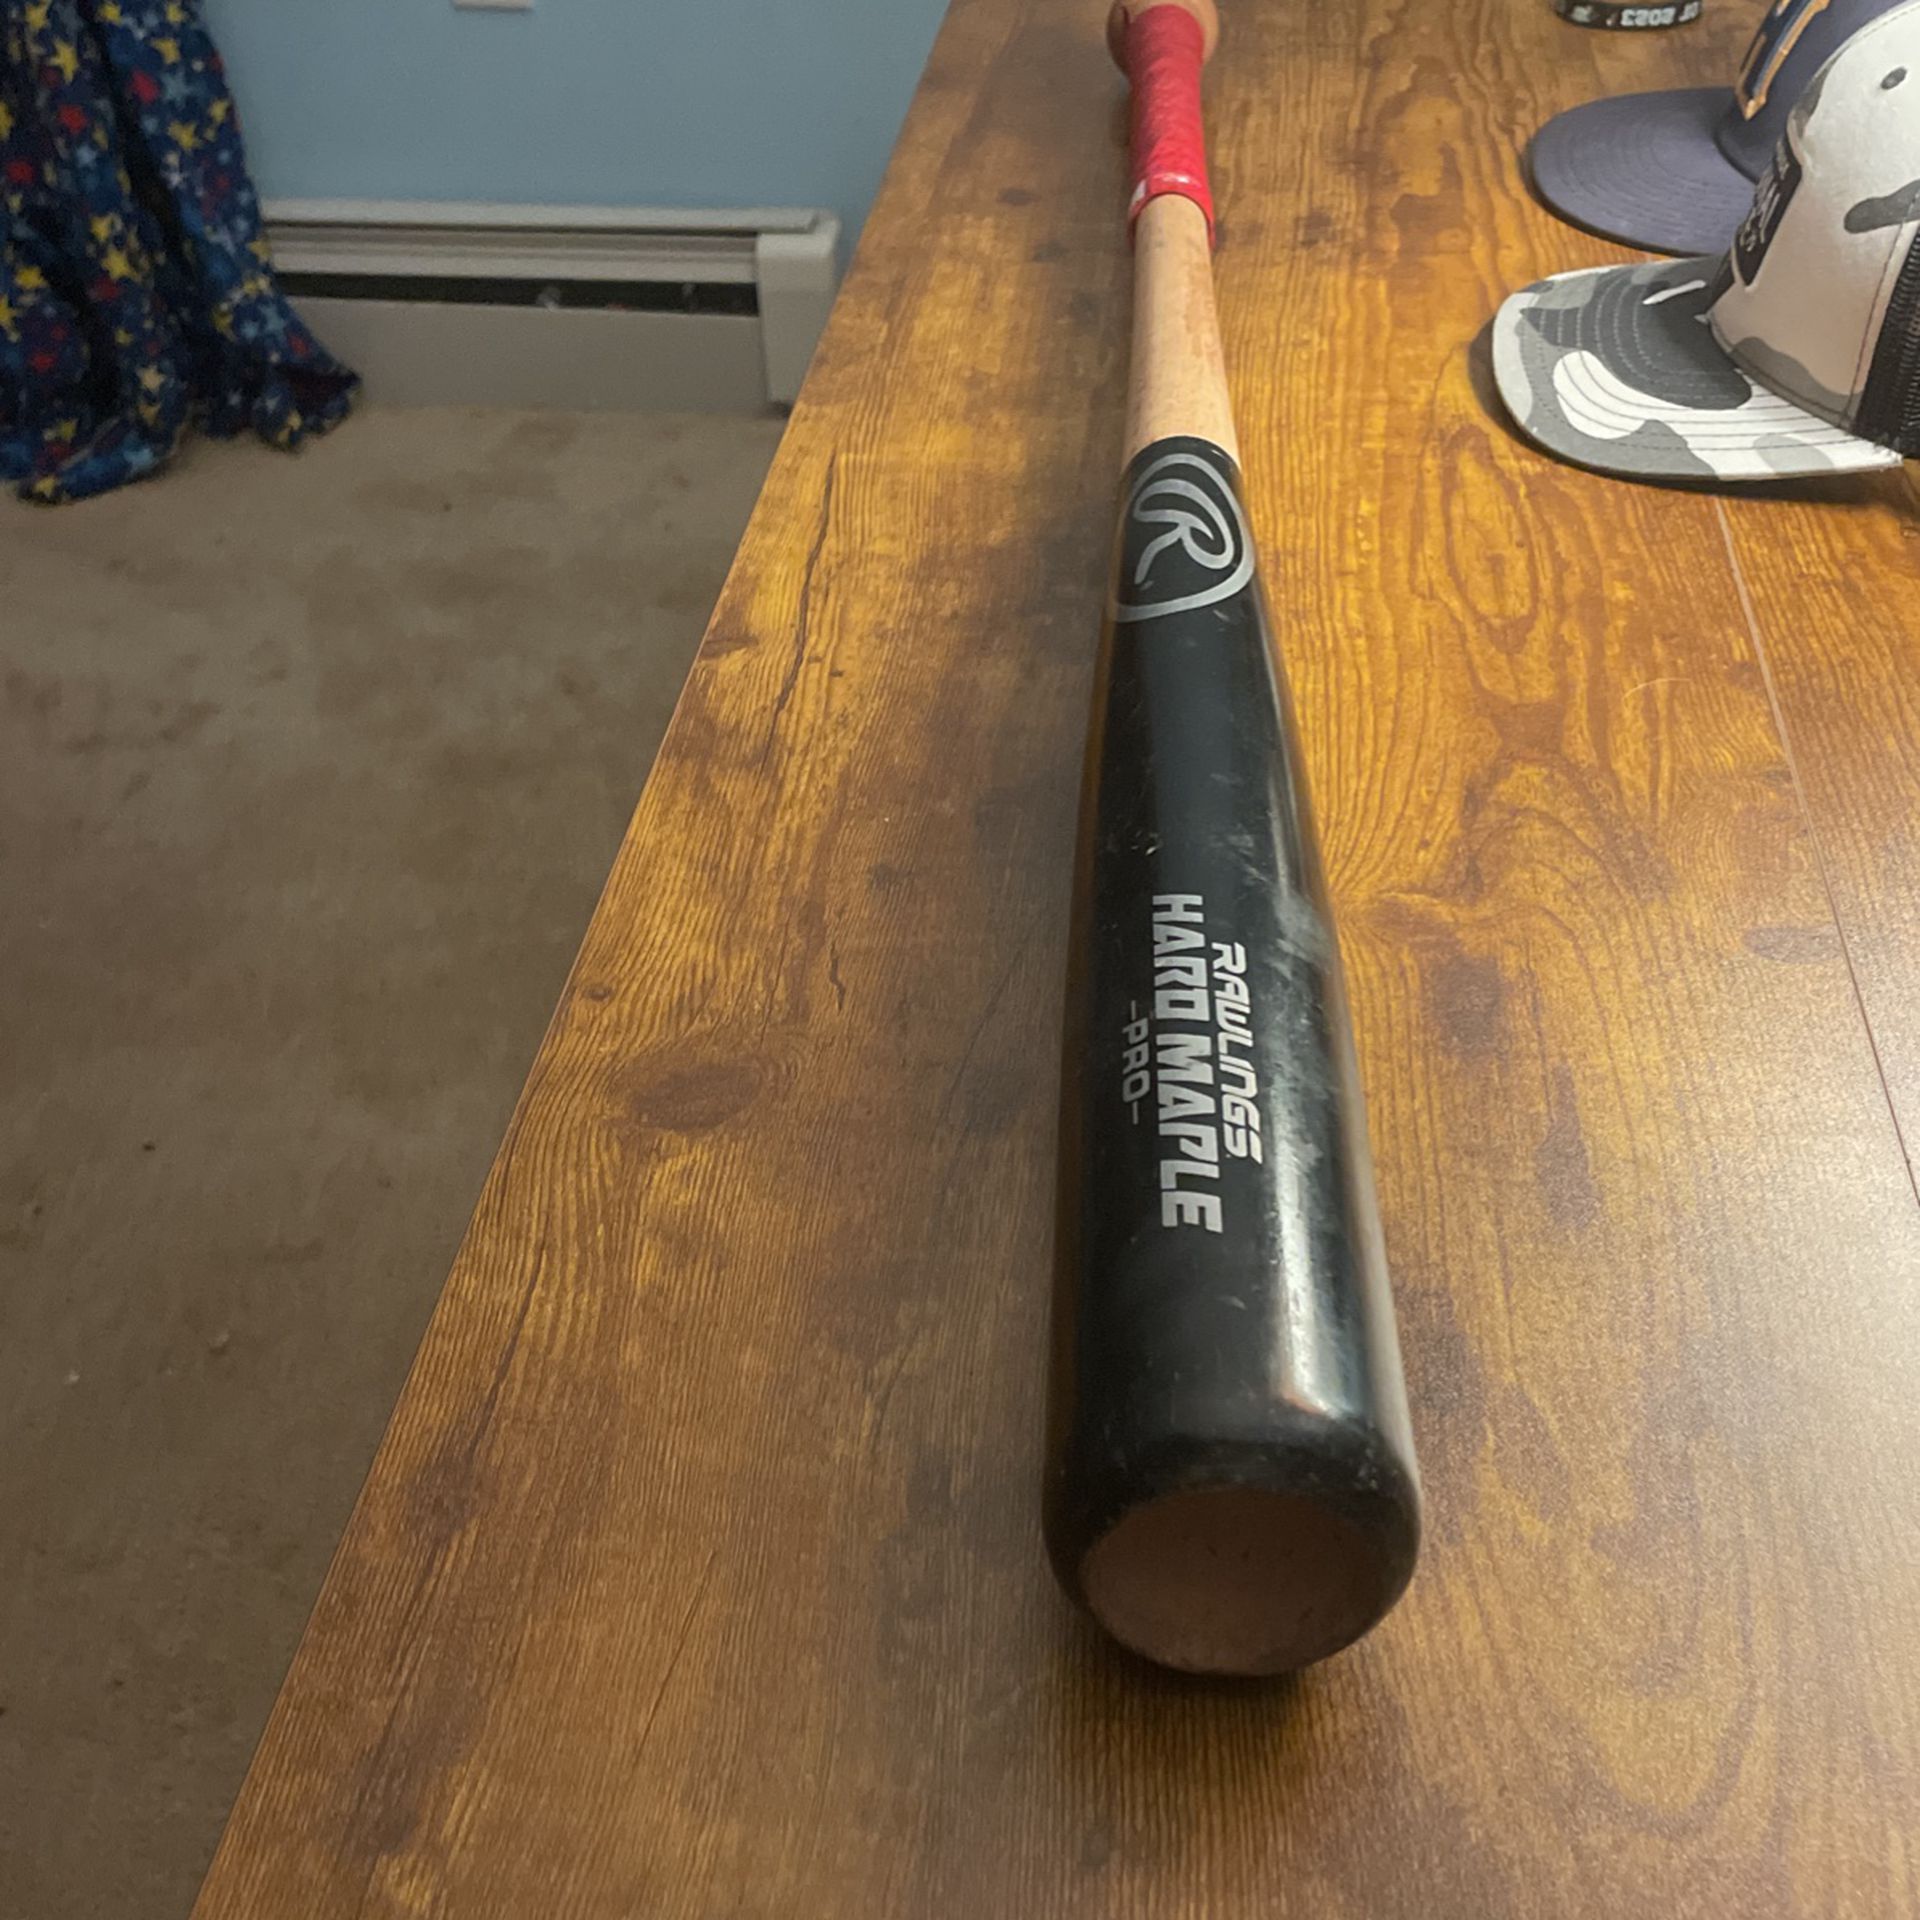 baseball bat 